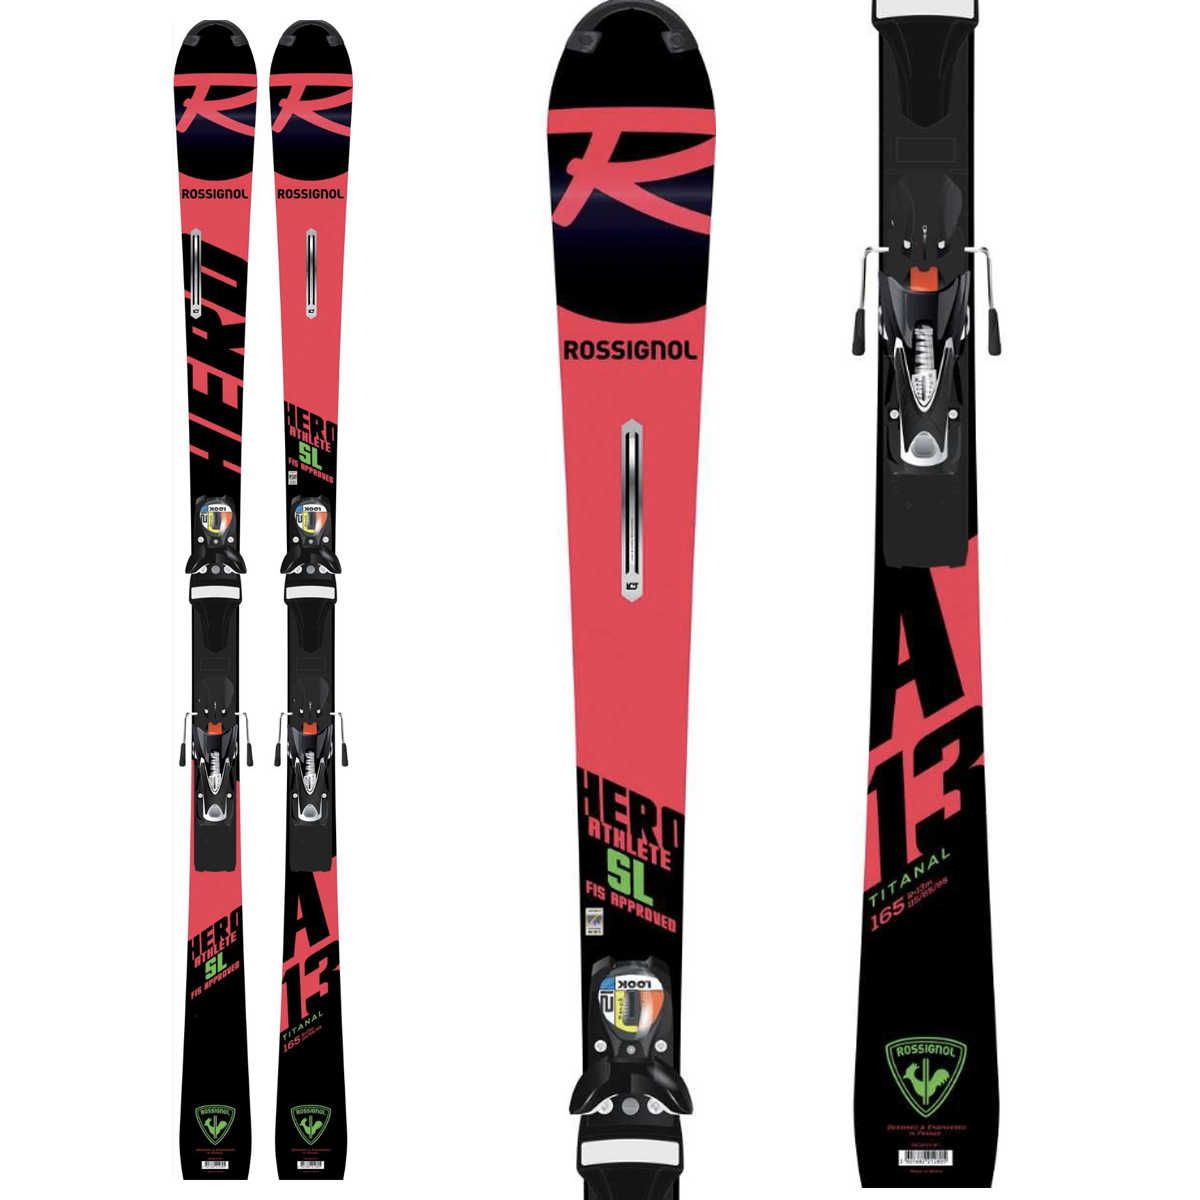 Pack ski HERO ATHLETE FSLR22 + SPX12 RKFB